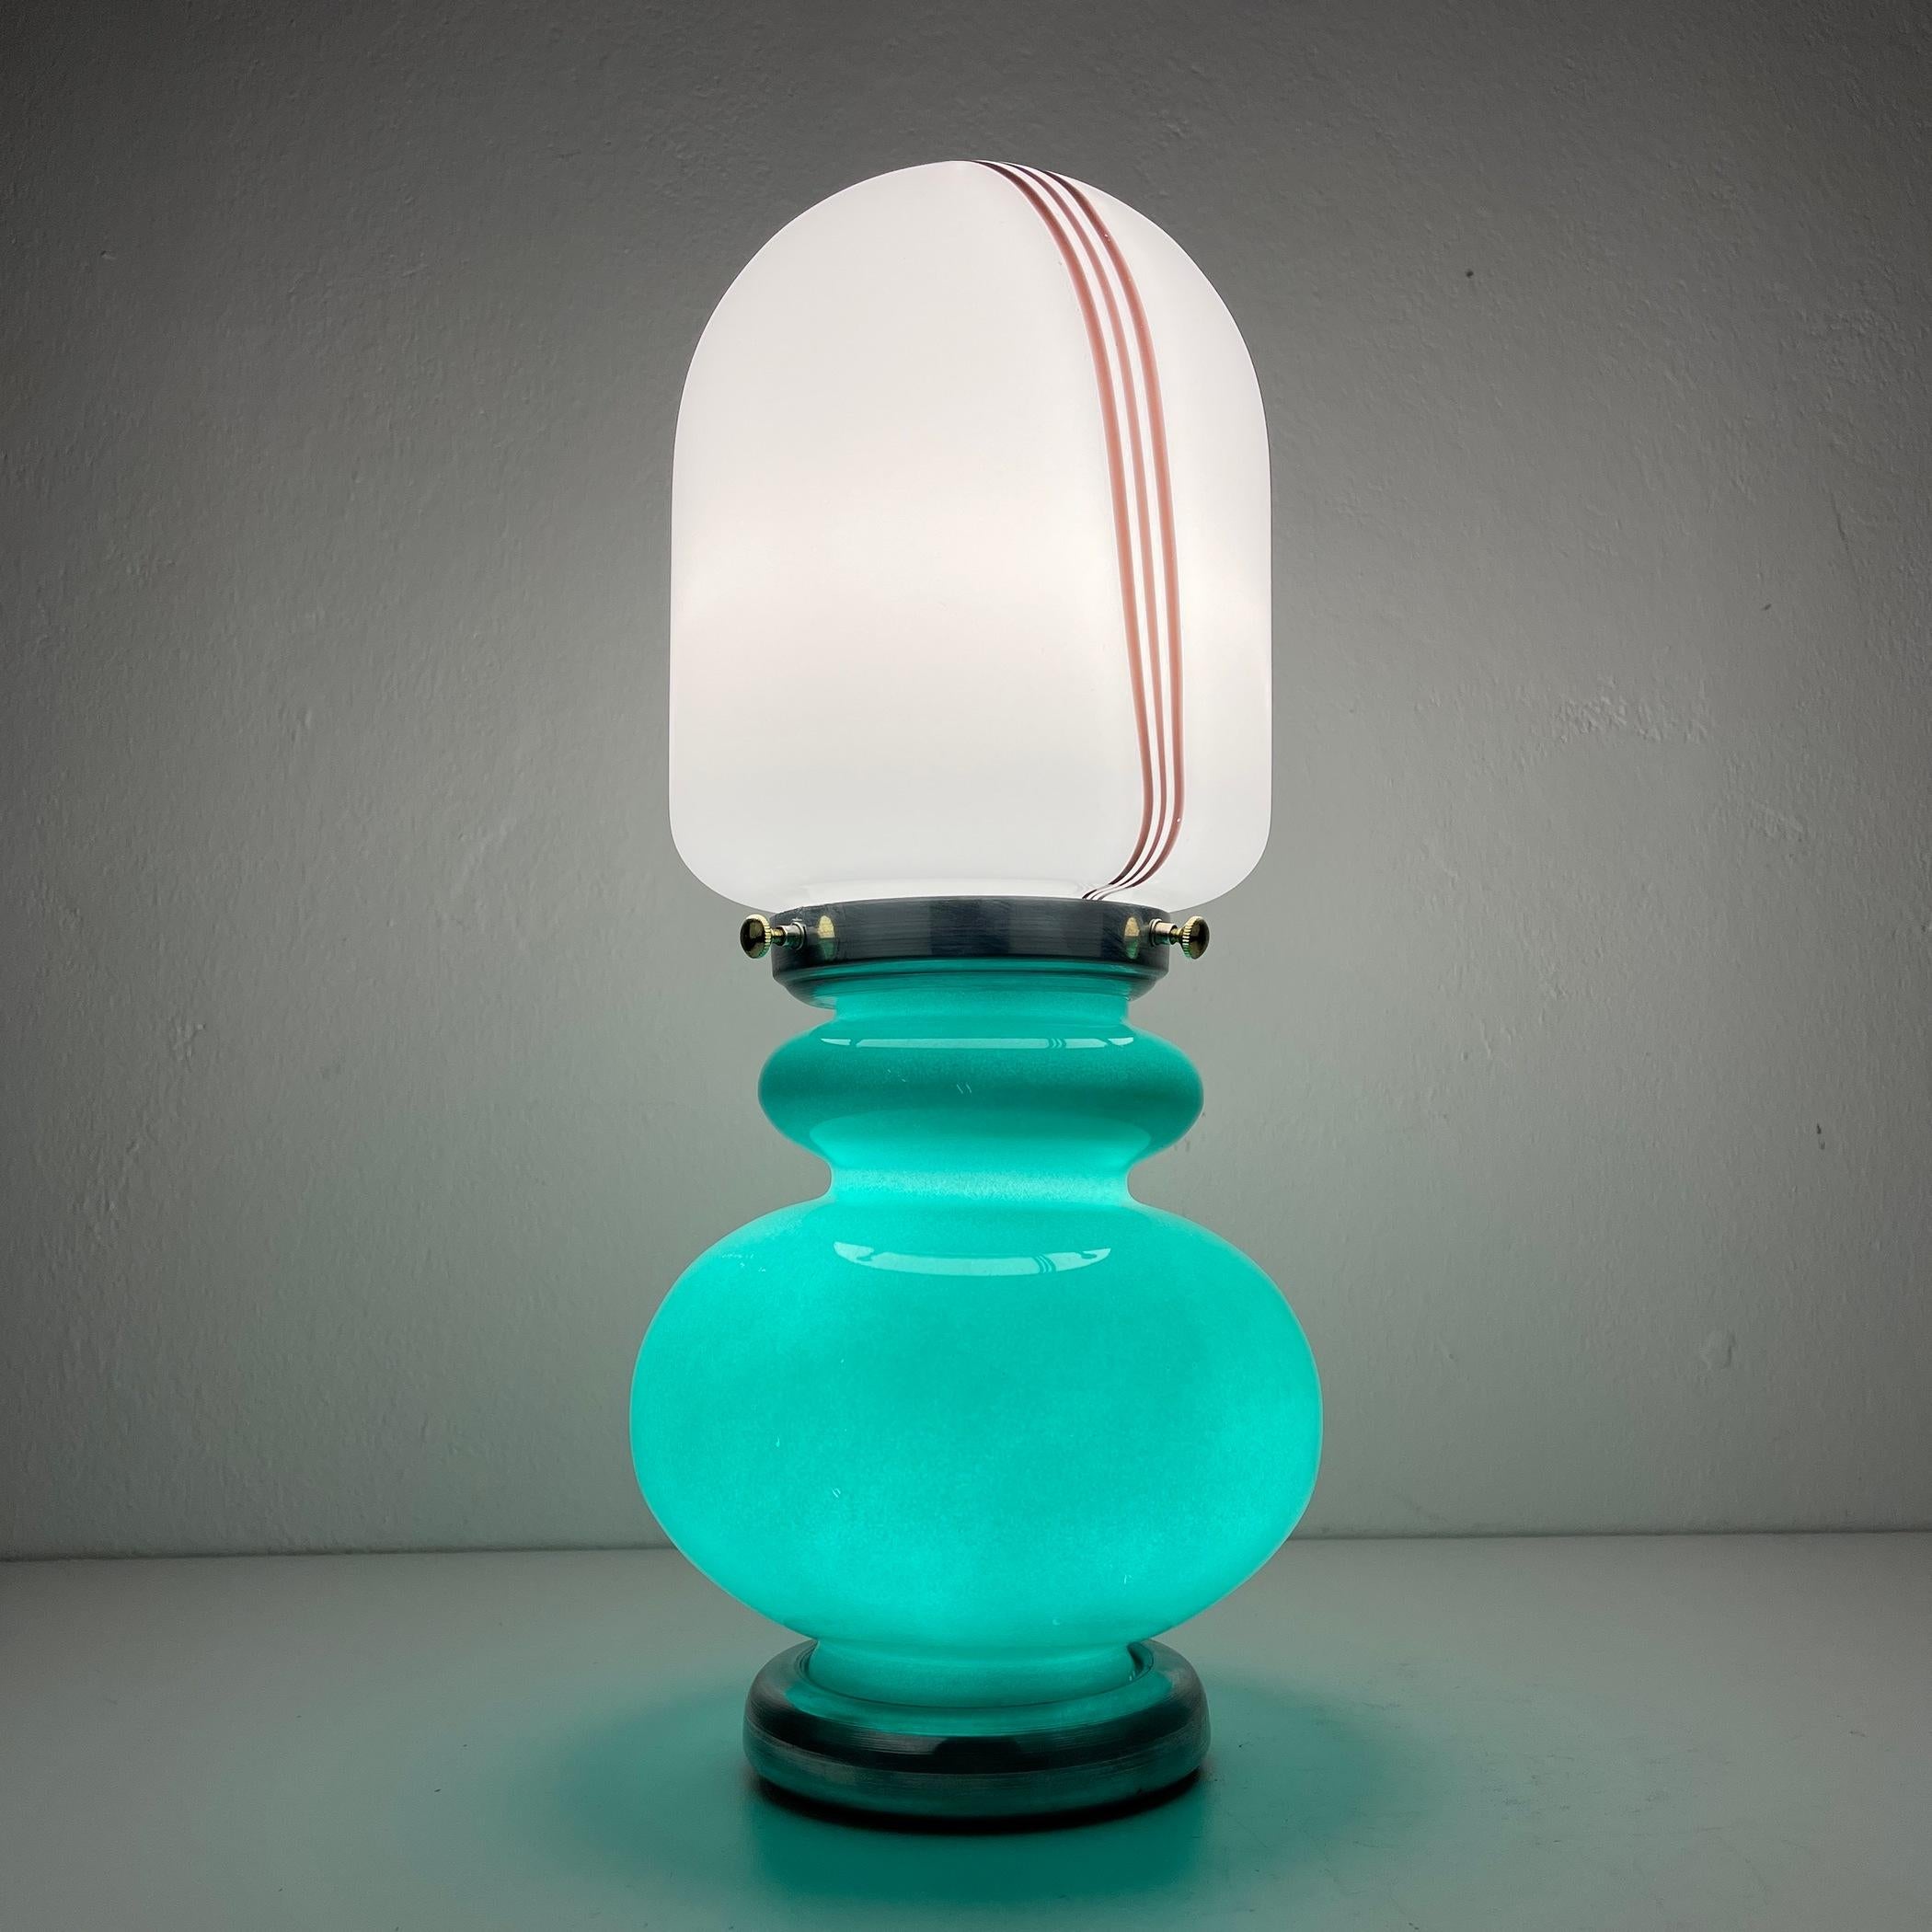 Voici une charmante lampe de table, fabriquée de manière experte en Italie au cours des vibrantes années 1980. Malgré son ancienneté, cette lampe est dans un état impeccable, avec un verre exempt d'éclats ou de fissures. Cette lampe distinctive se